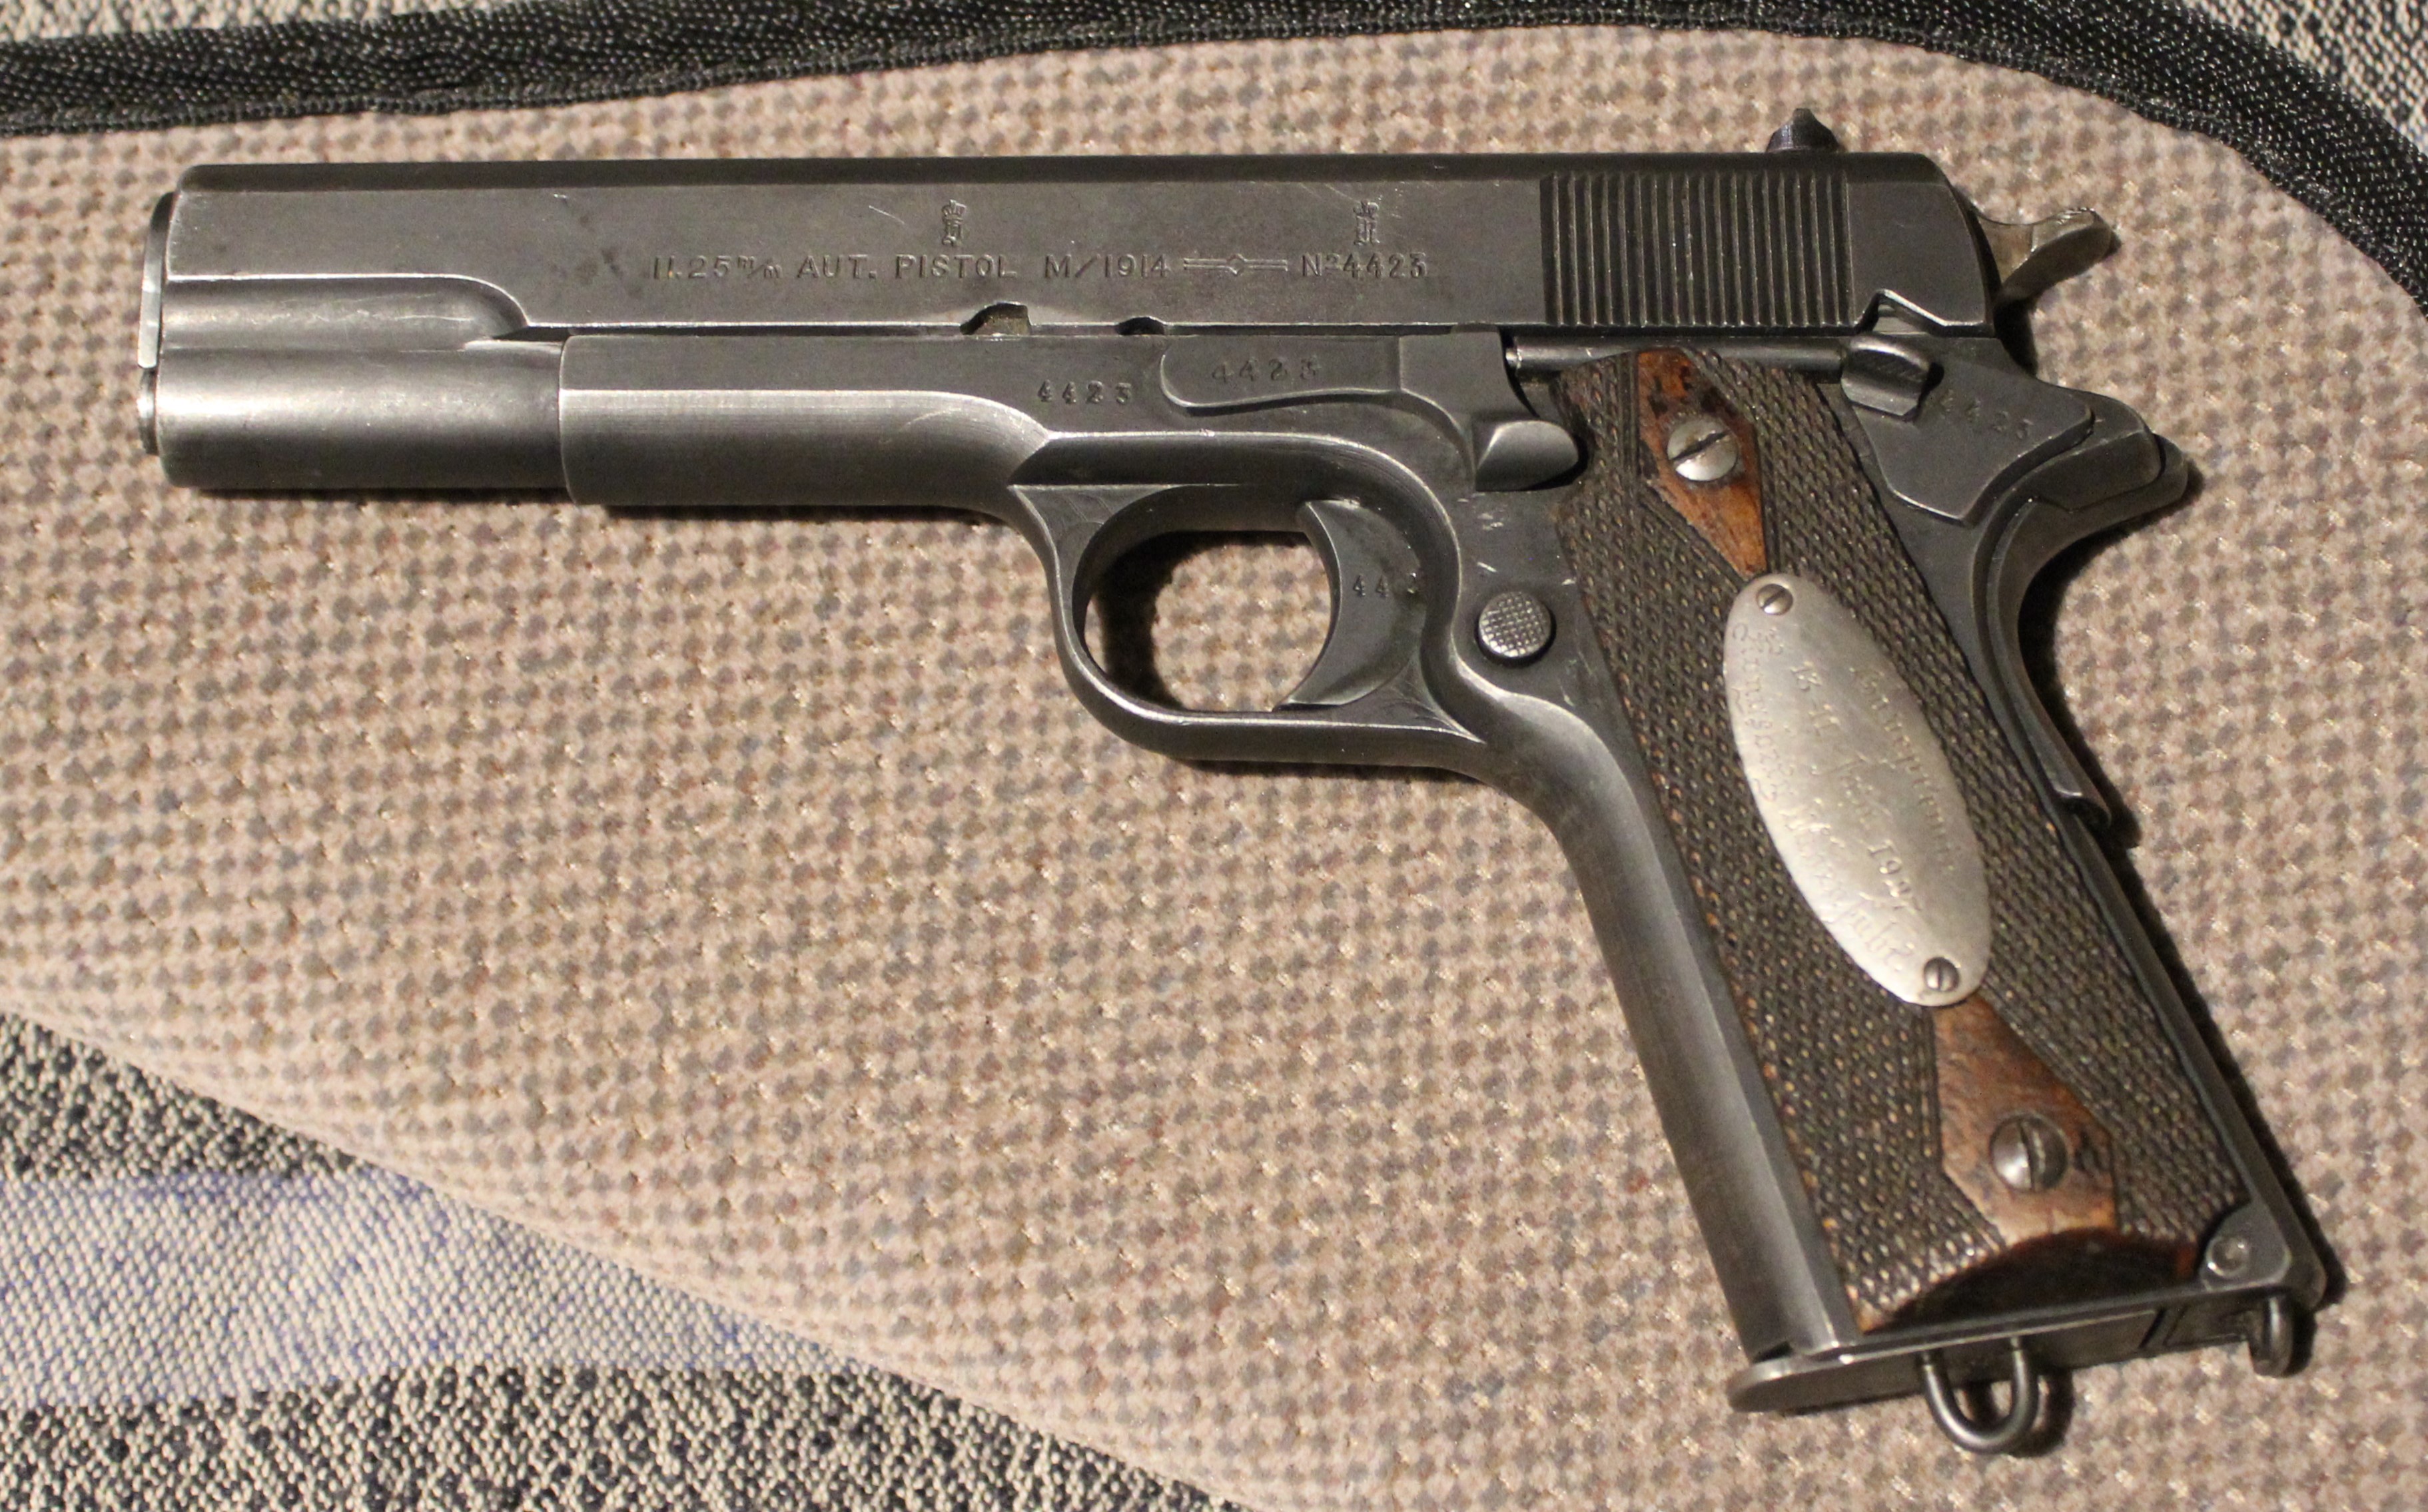 ./guns/pistol/bilder/Pistol-Kongsberg-M1914-Gavepremie-4423-1.JPG